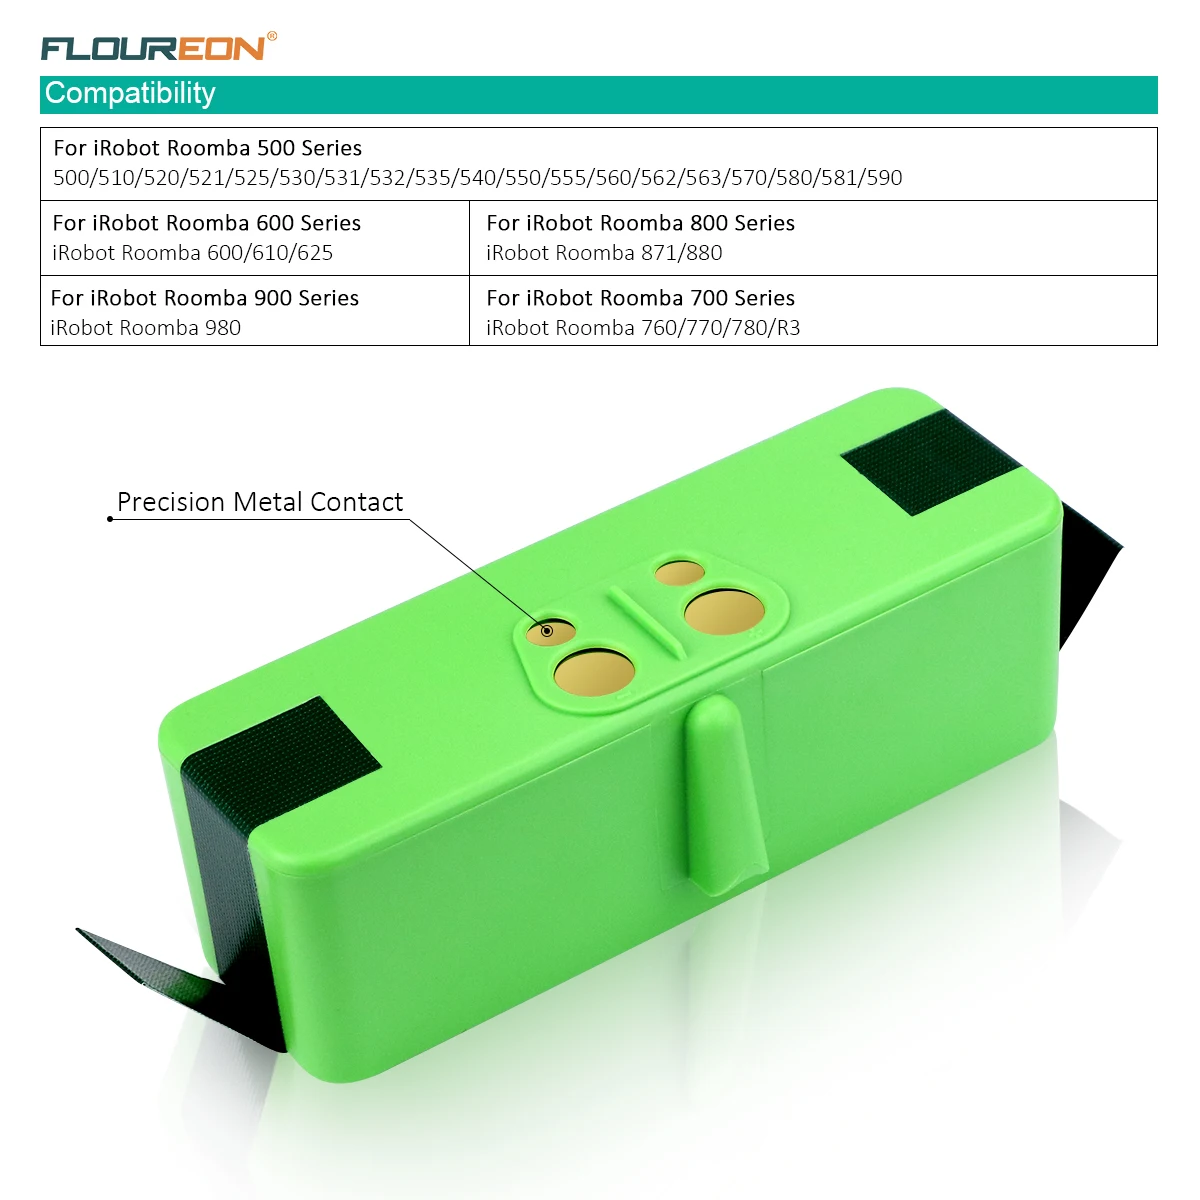 Floureon 14,8 V 5300mAh литий-ионный аккумулятор совместим с IRobot Roomba 500 600 700 800 980 серии